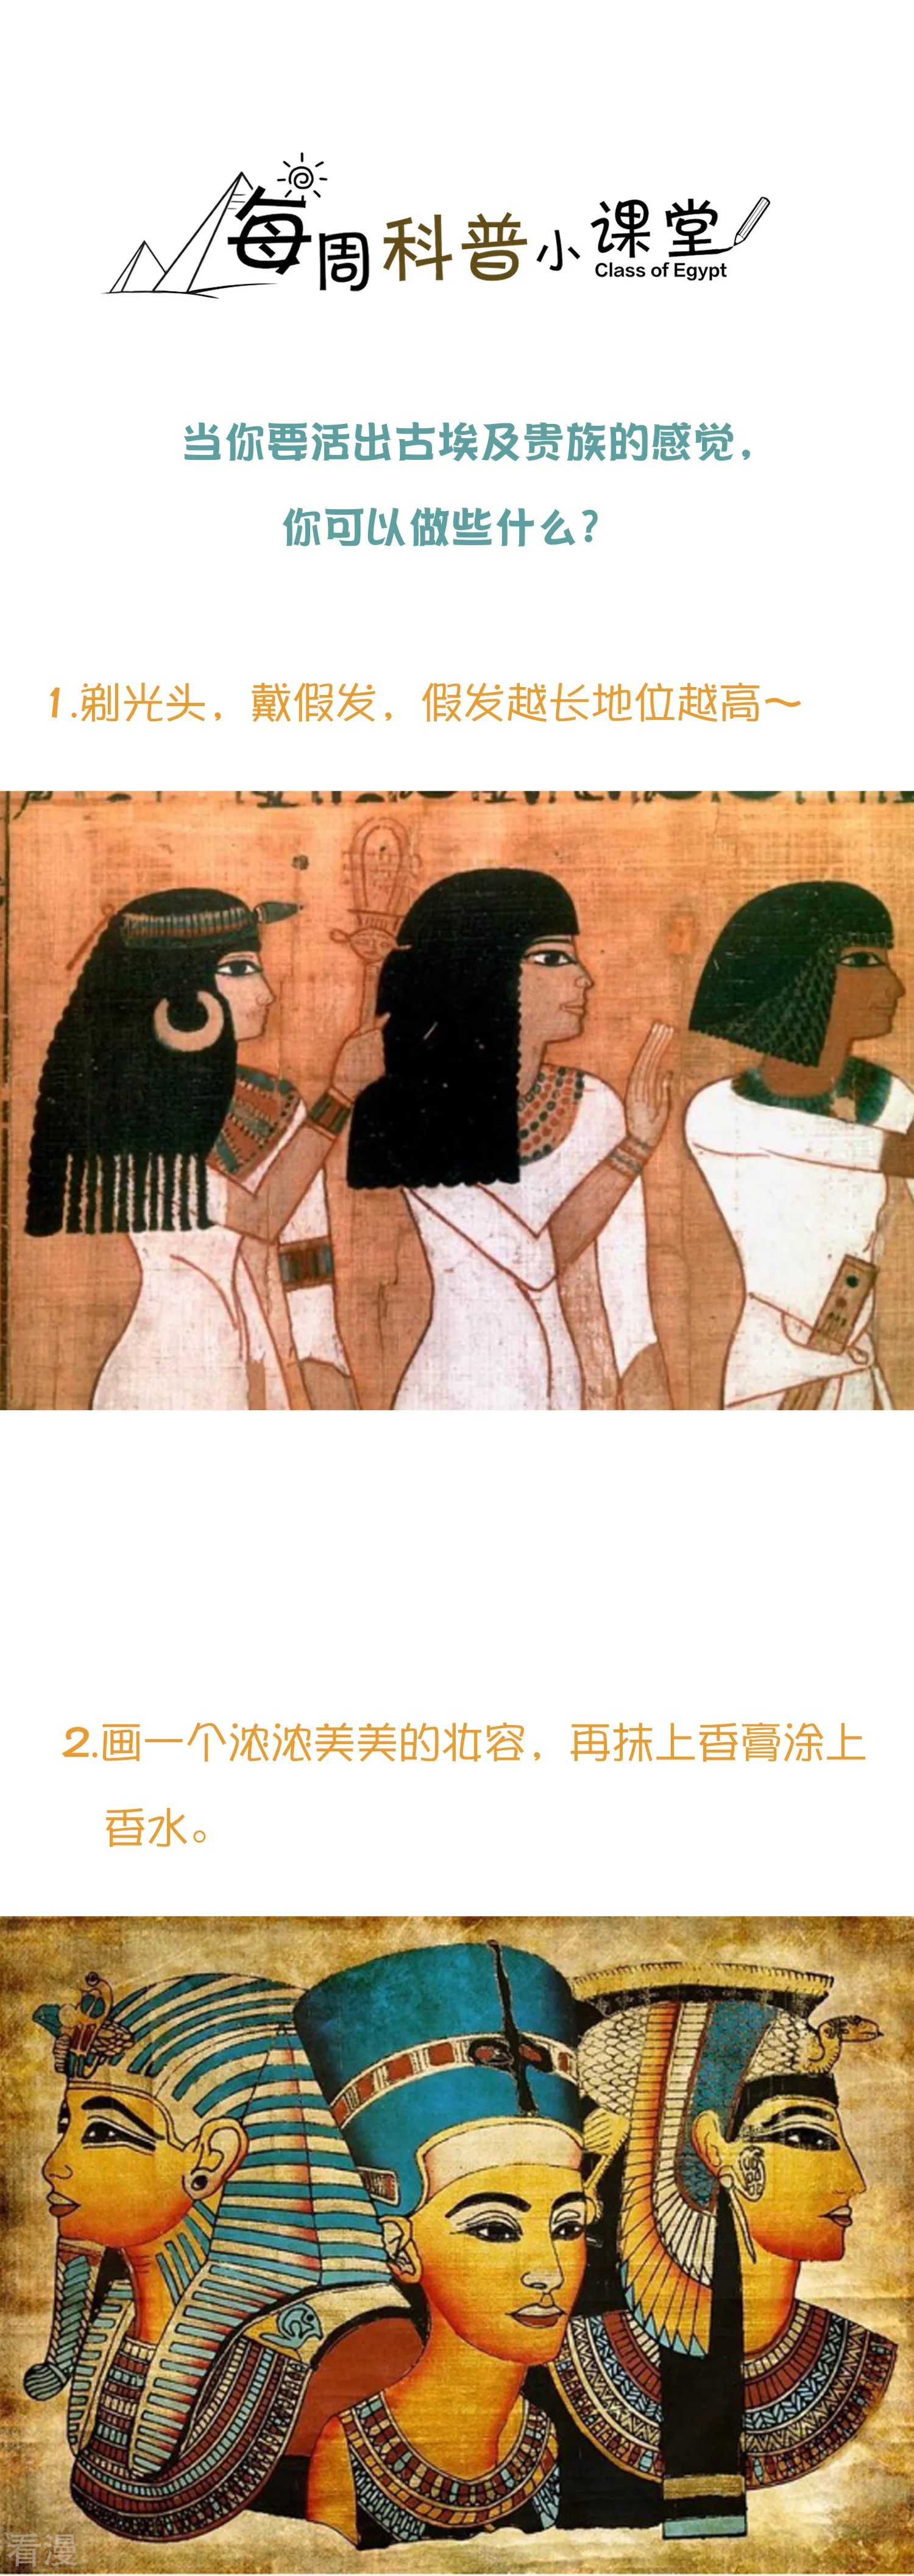 王的第一宠后 - 王的茶话会32 穿越埃及当贵族 - 1